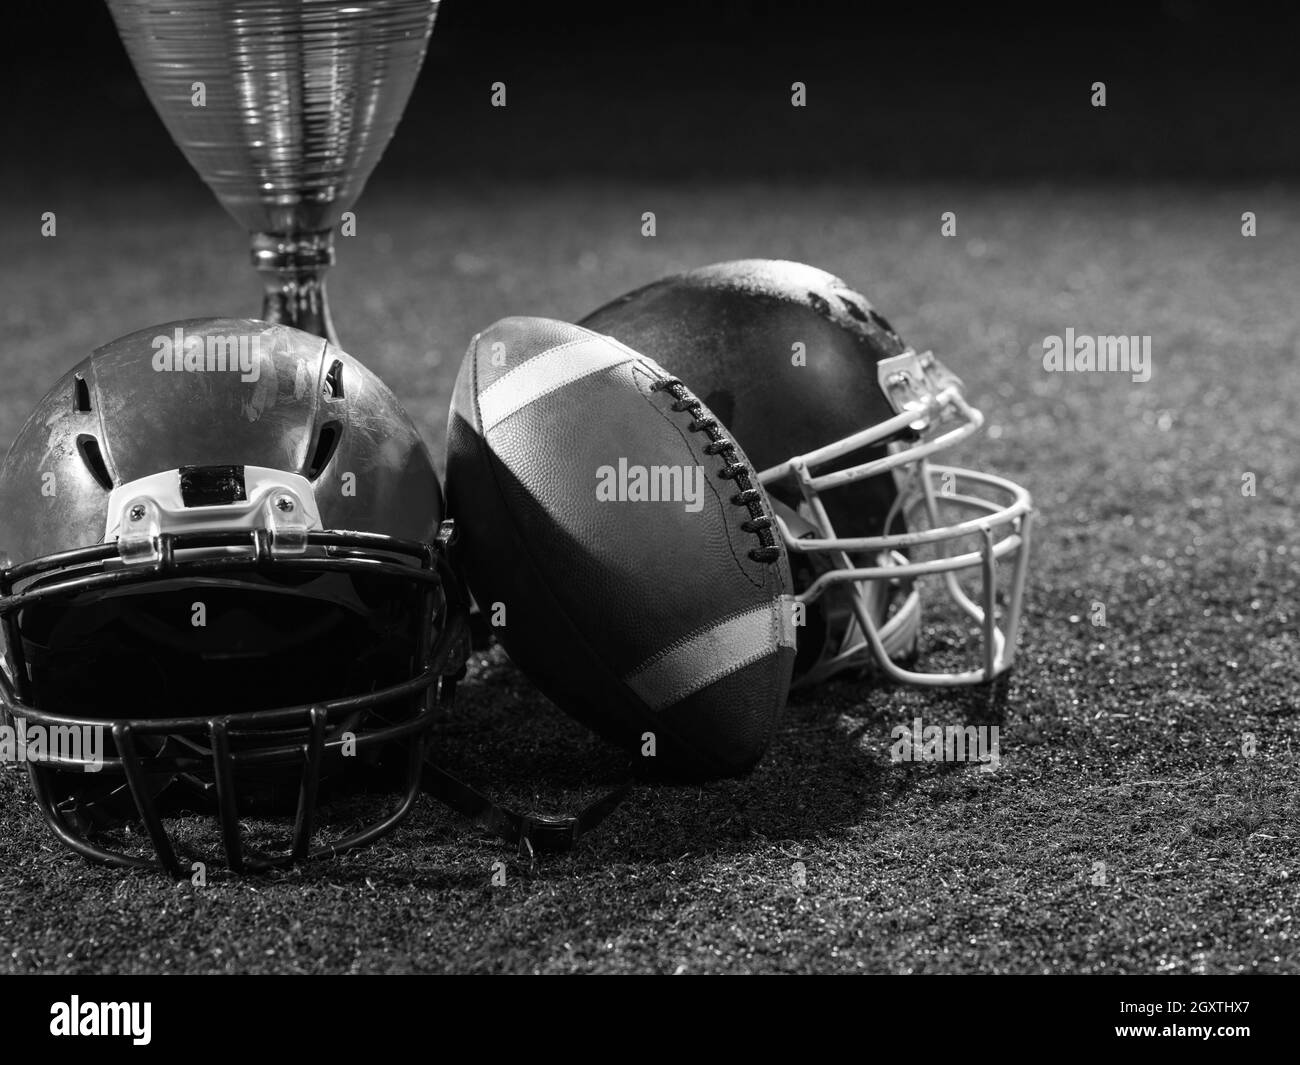 Libre shot du football américain,casques et trophy sur pelouse la nuit Banque D'Images